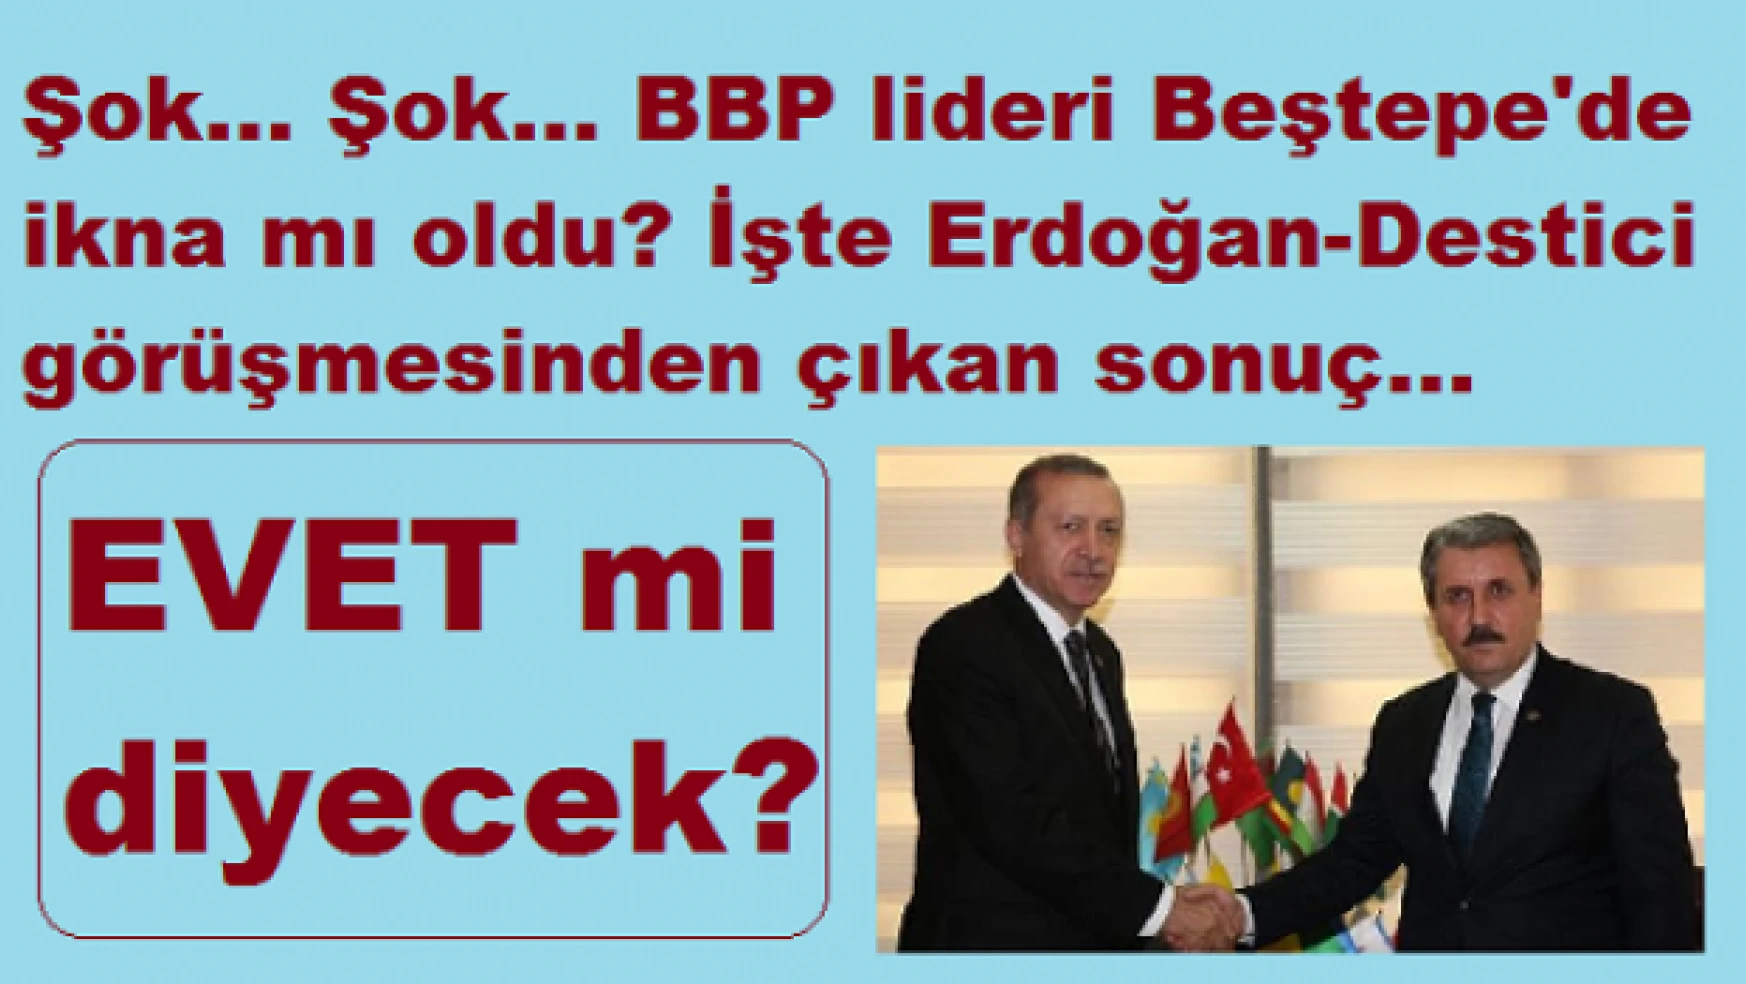 Flaş... Erdoğan Destici'yi 'ikna' edebildi mi? BBP 'Evet' mi diyecek? İşte cevabı